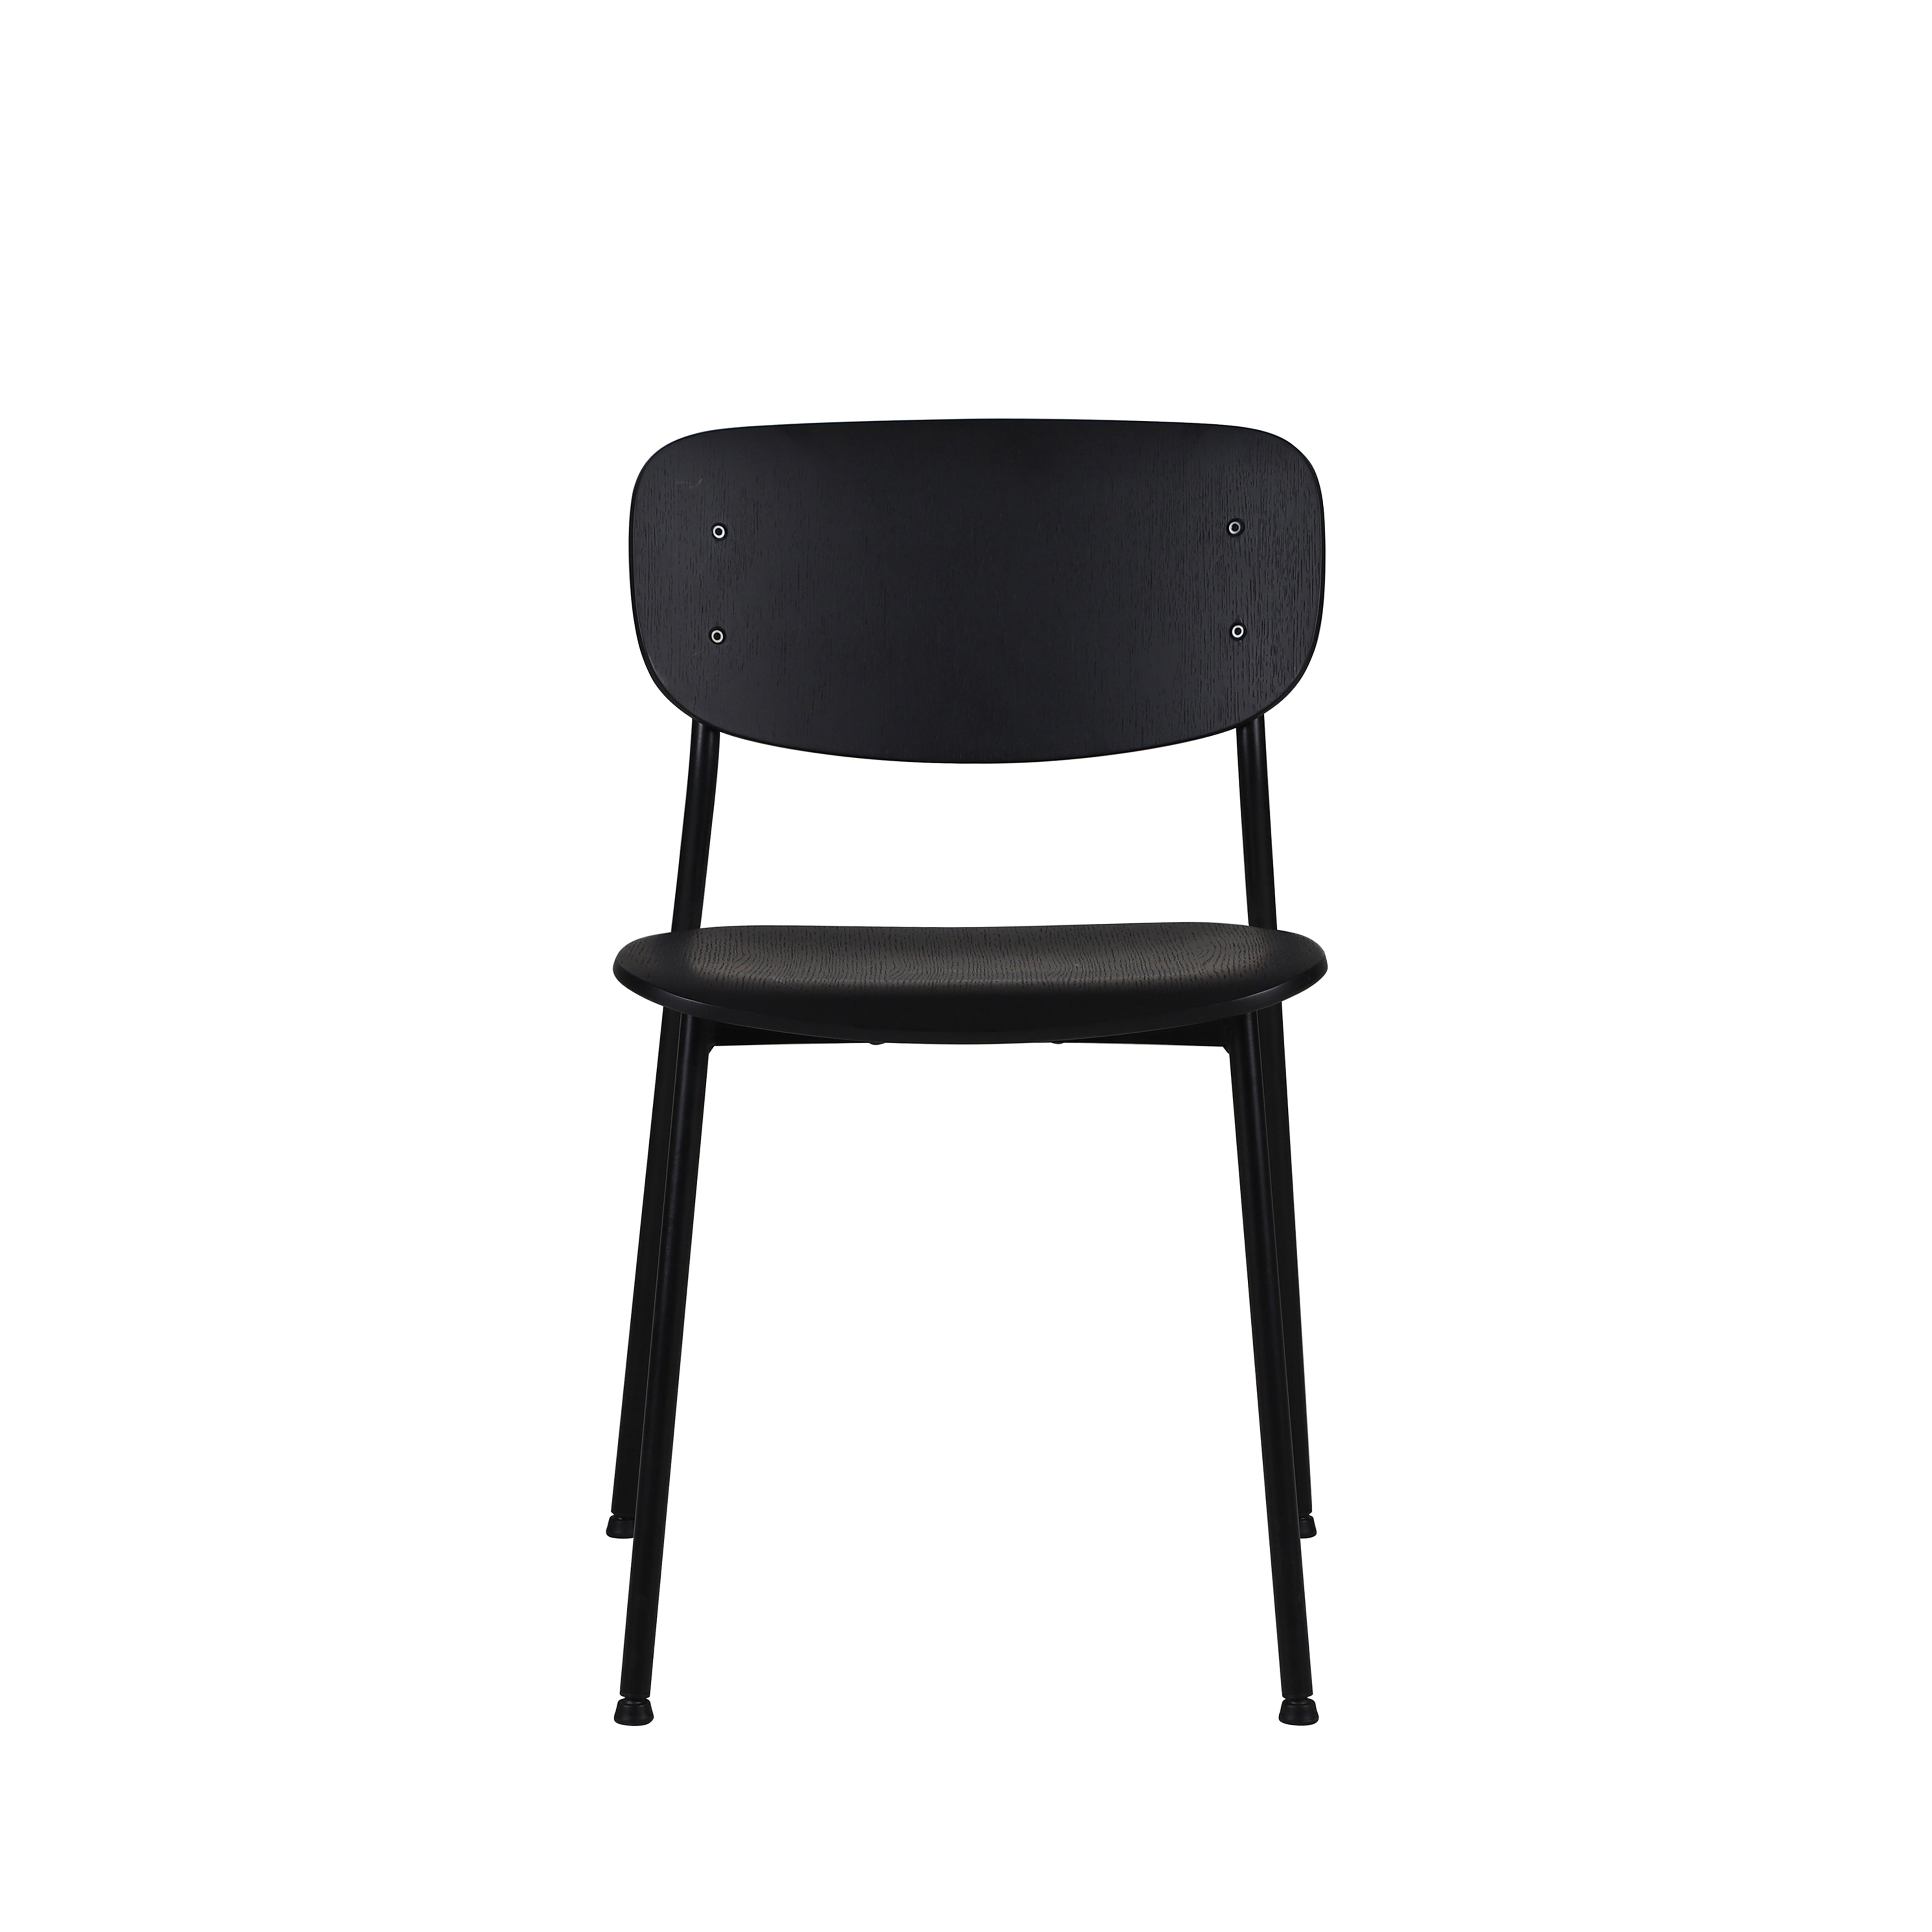 WM - Chair